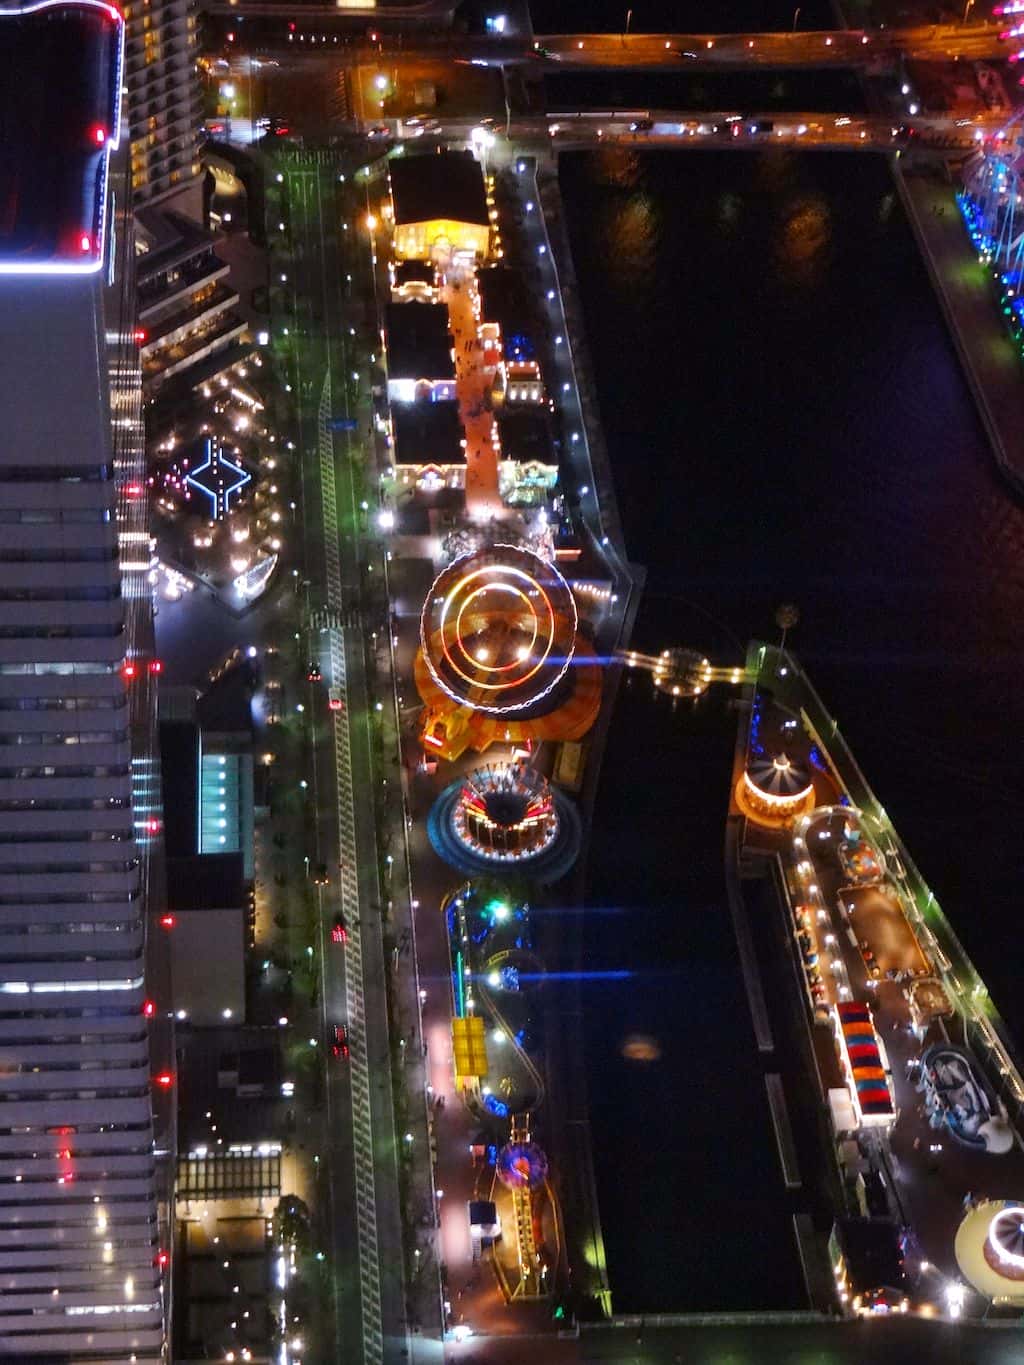 ถ่ายรูปชมวิว 360 องศา ที่ชั้น 69 ของ Yokohama Landmark Tower เมืองโยโกฮาม่า